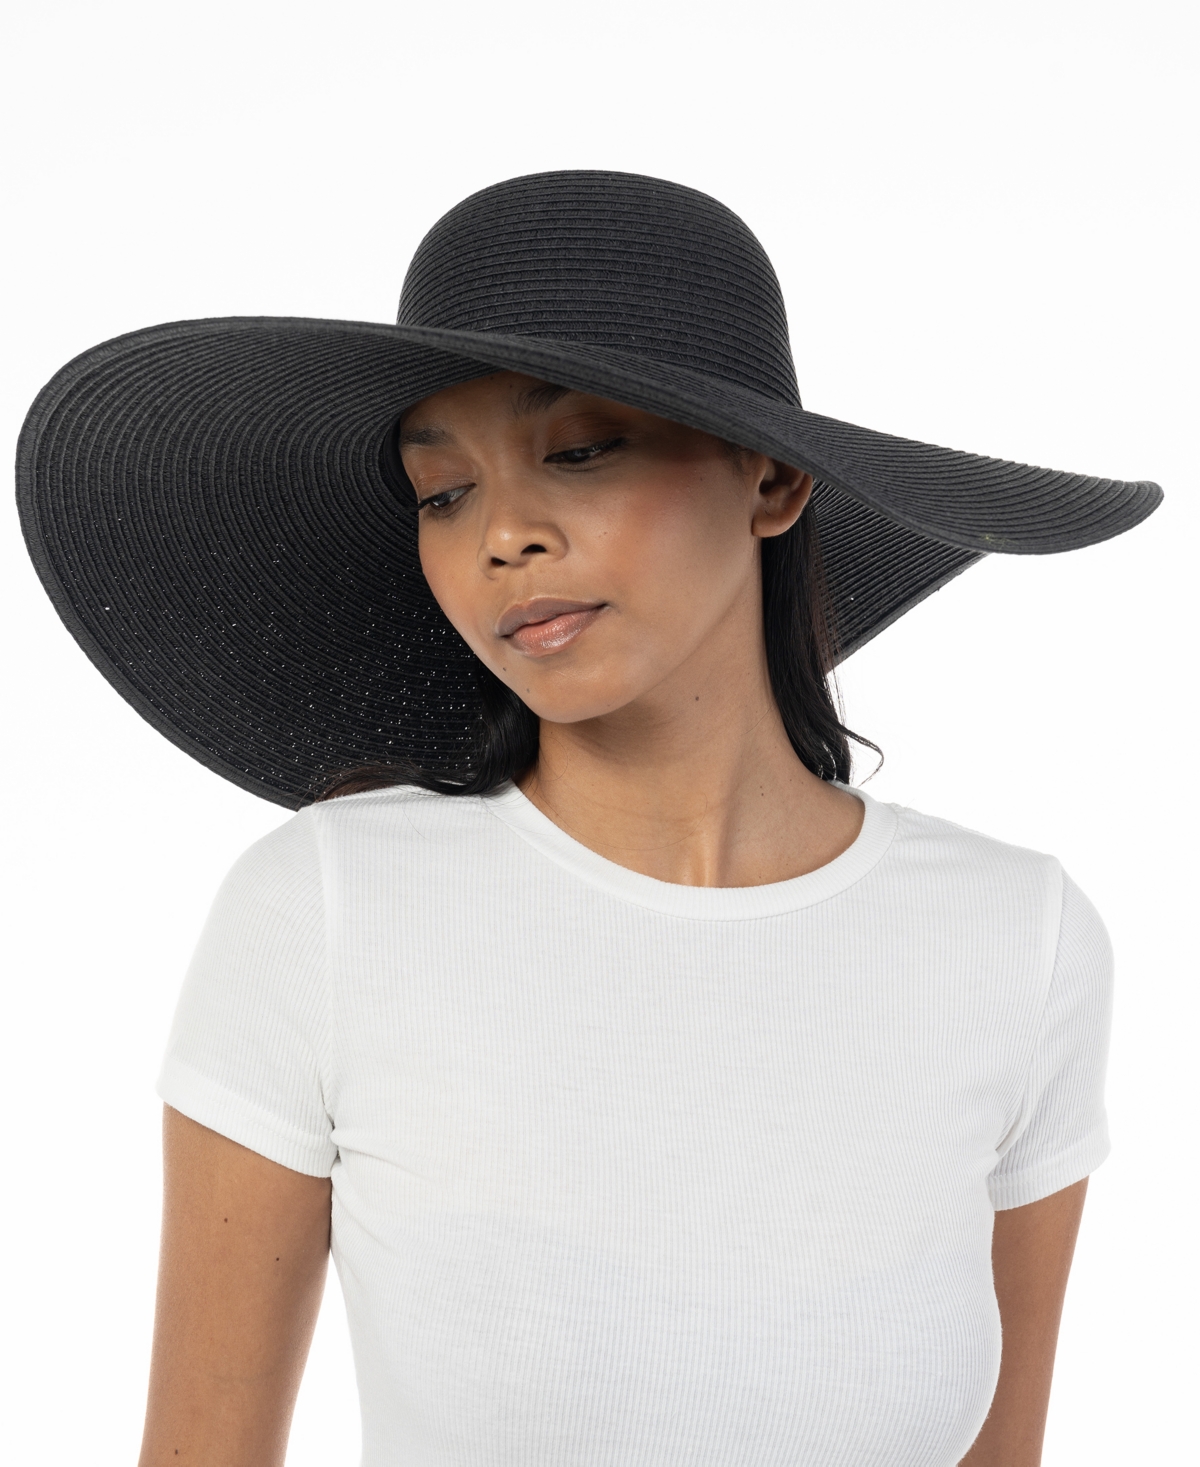 Women's Oversized Floppy Hat, Created for Macy's - Black